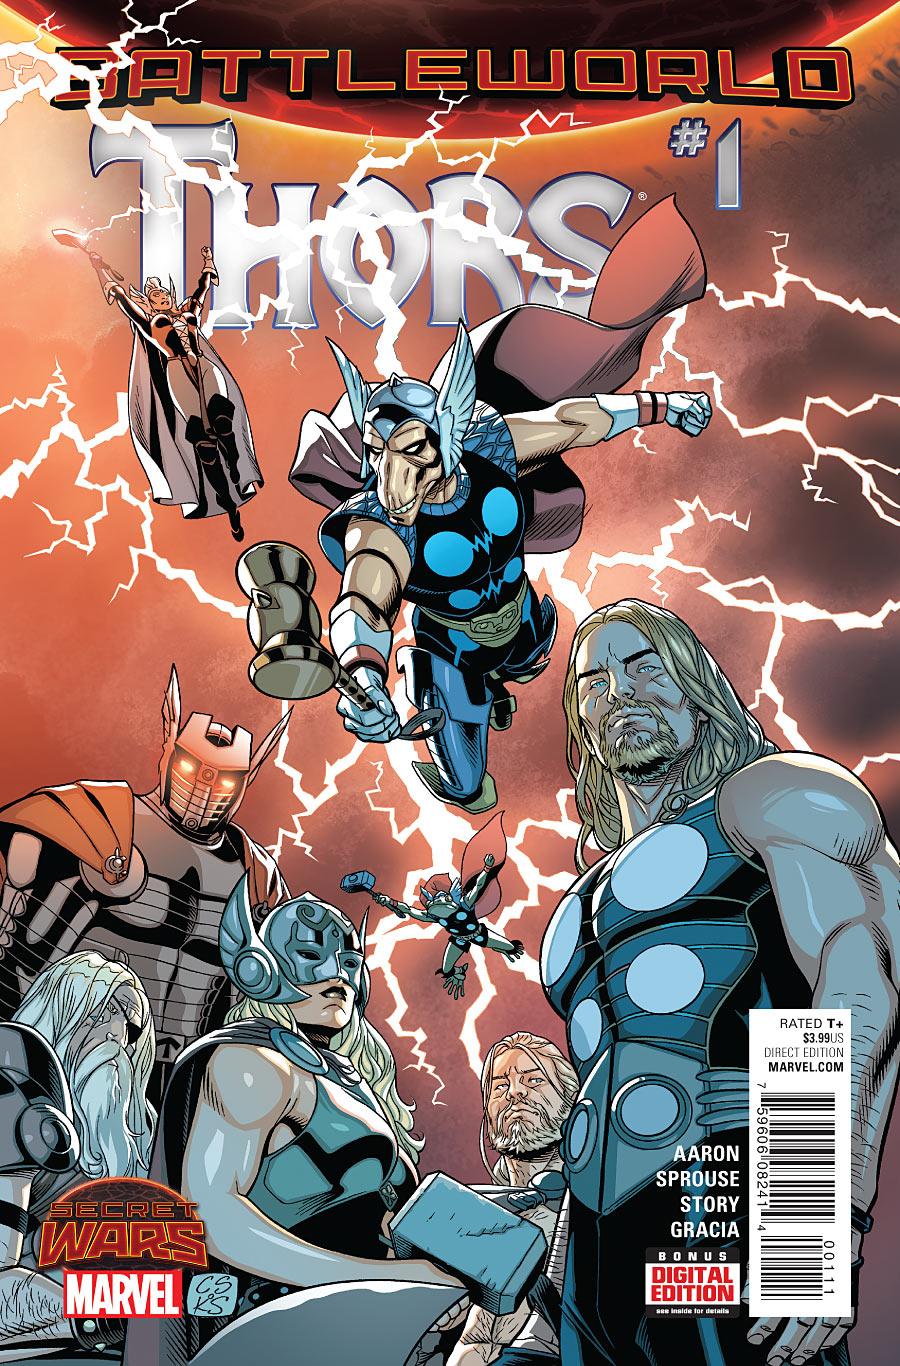 Thors Vol. 1 #1